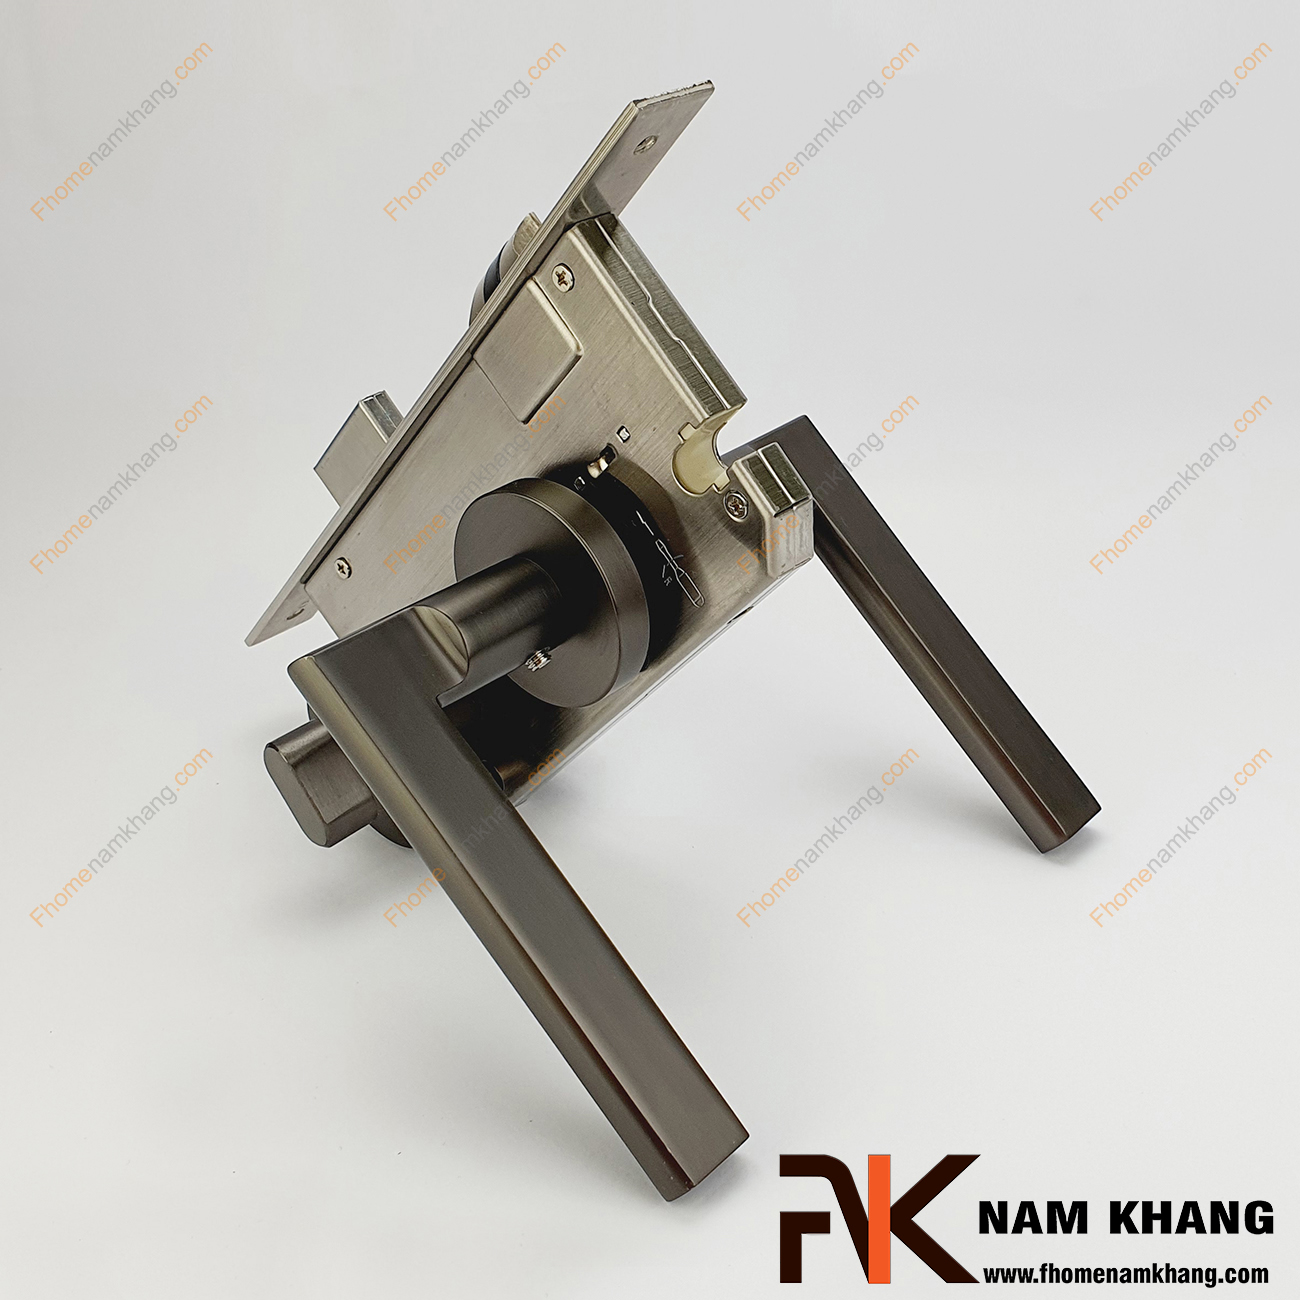 Khóa cửa phân thể dạng trơn bằng hợp kim cao cấp NK571-X có thiết kế nhỏ gọn, phần ốp khóa và tay gạt riêng biệt, tạo được sự nổi bật độc đáo.